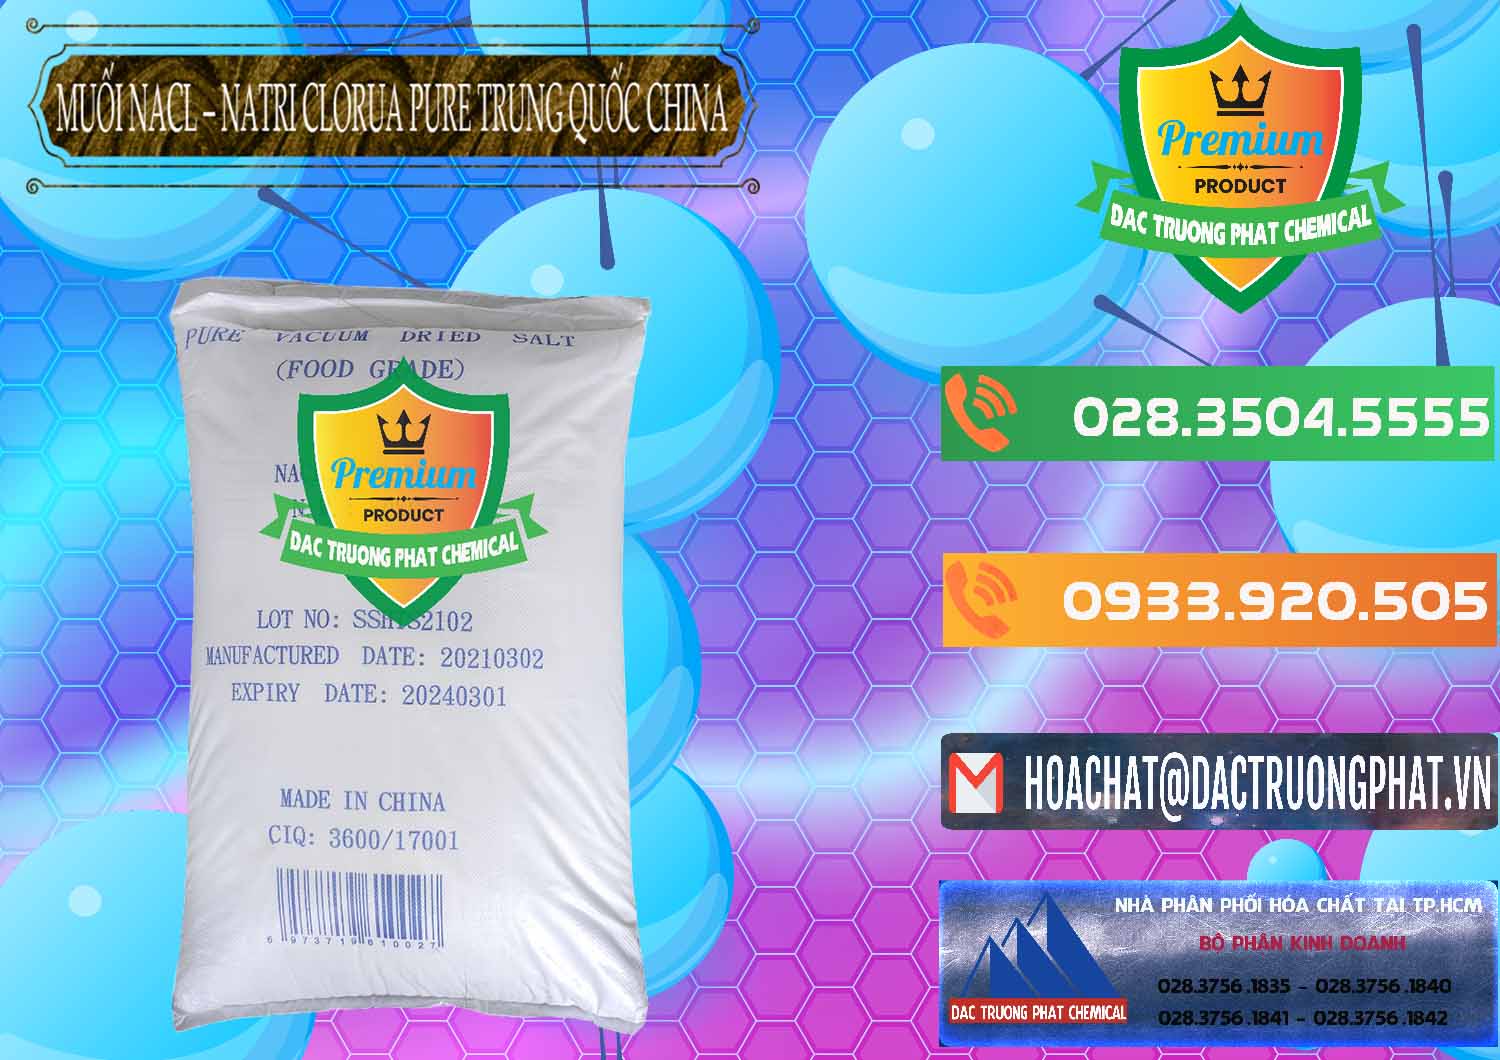 Đơn vị bán và phân phối Muối NaCL – Sodium Chloride Pure Trung Quốc China - 0230 - Chuyên phân phối và kinh doanh hóa chất tại TP.HCM - hoachatxulynuoc.com.vn